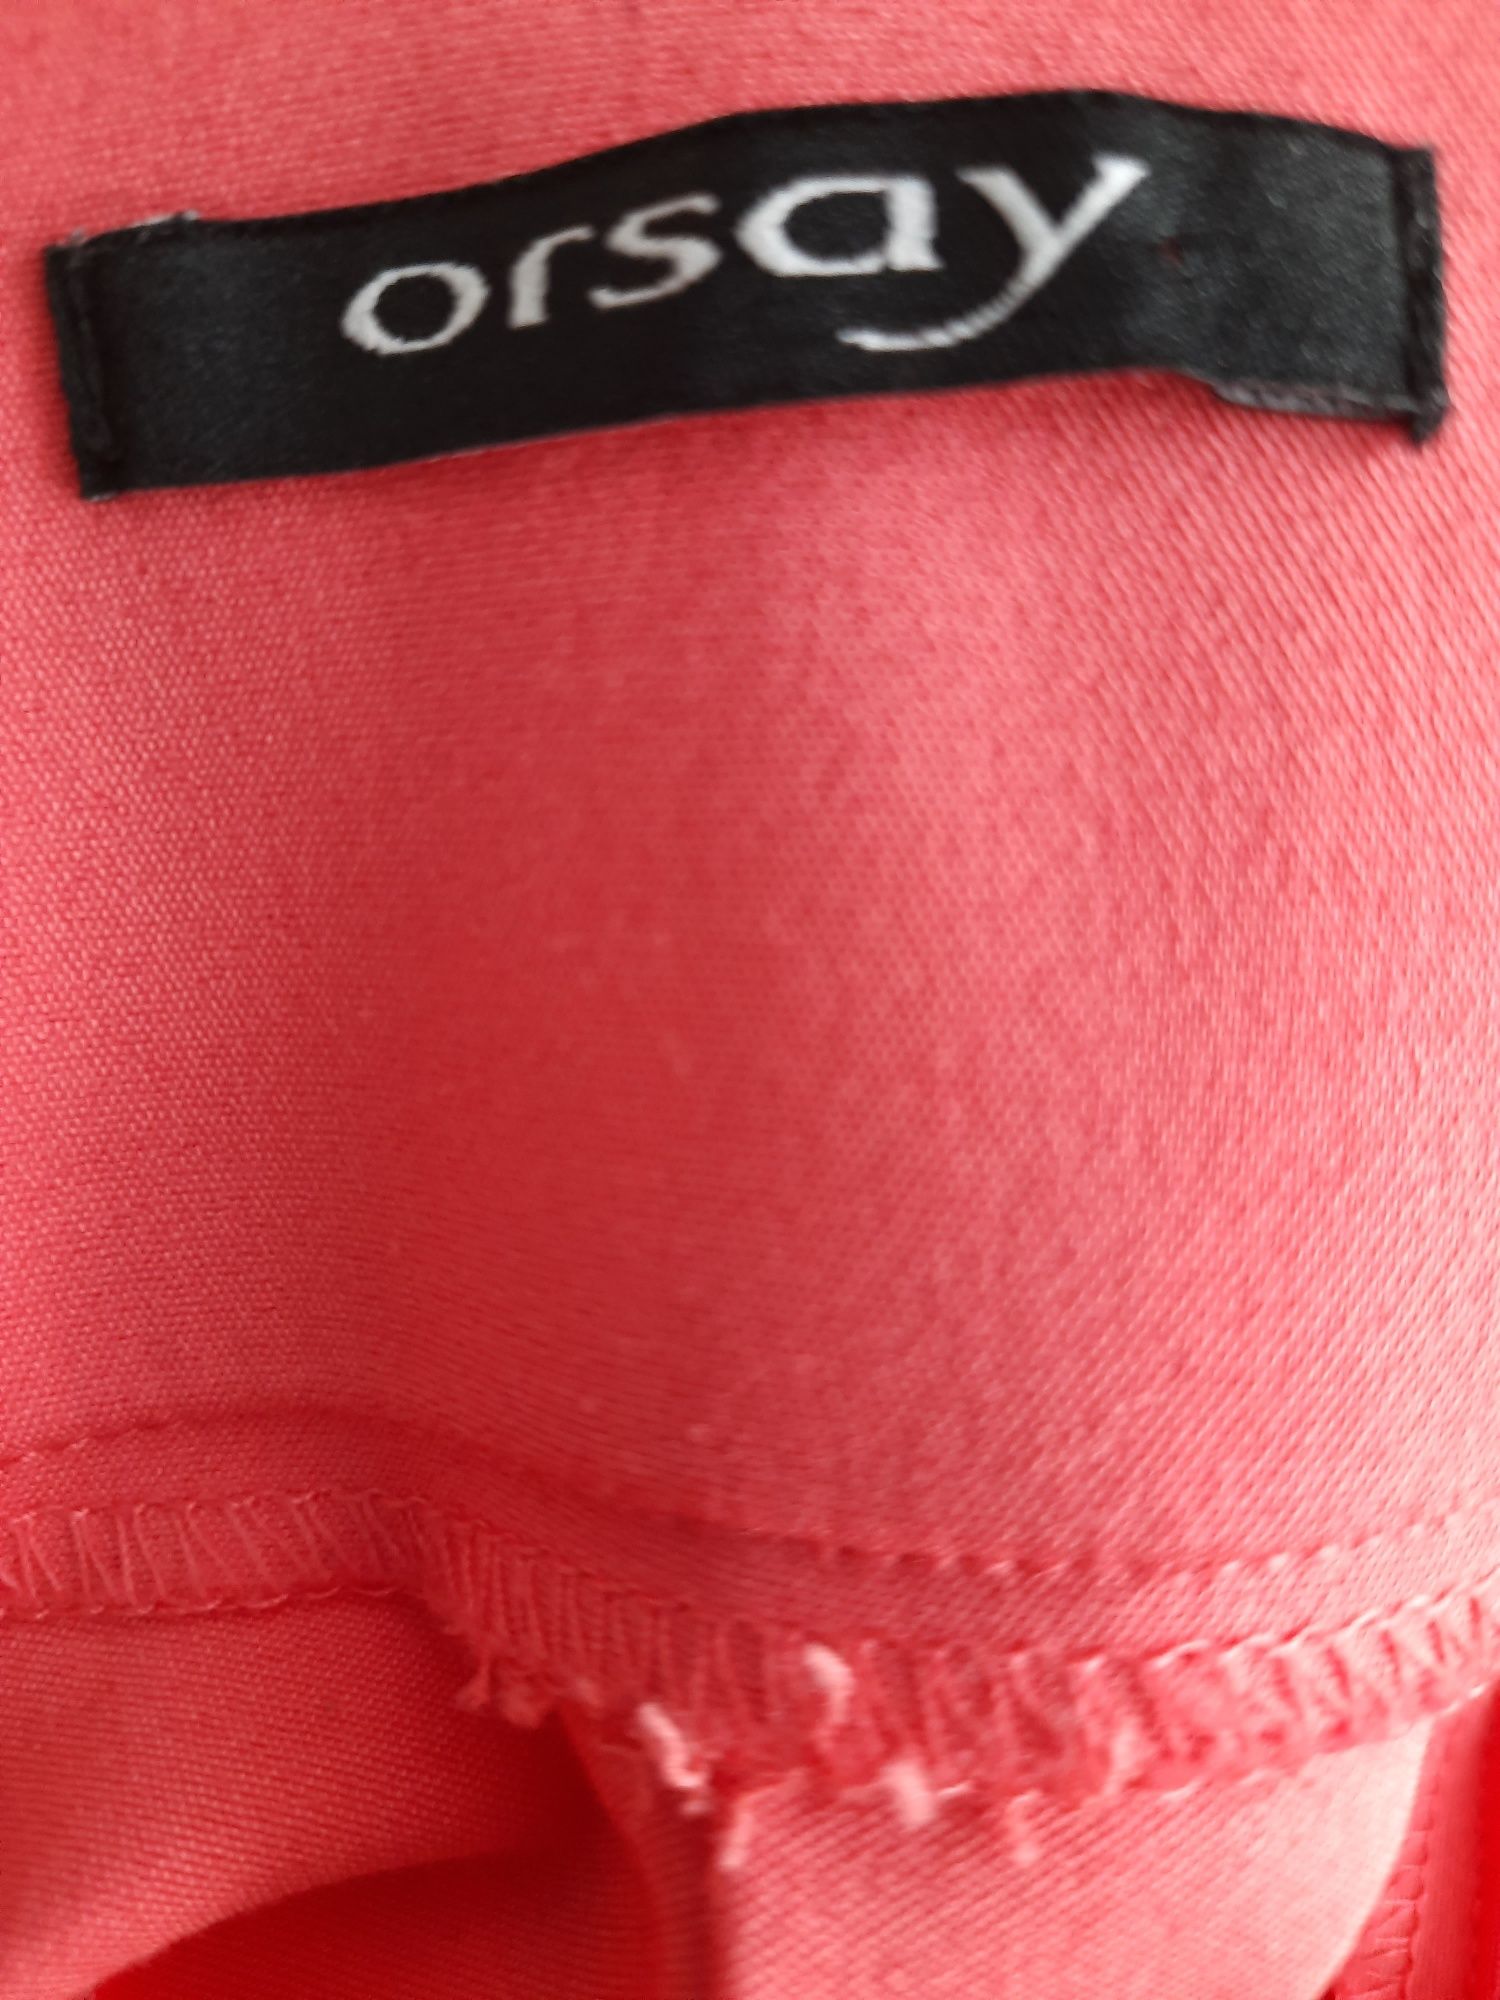 Malinowa spódnica z kieszeniami, ORSAY